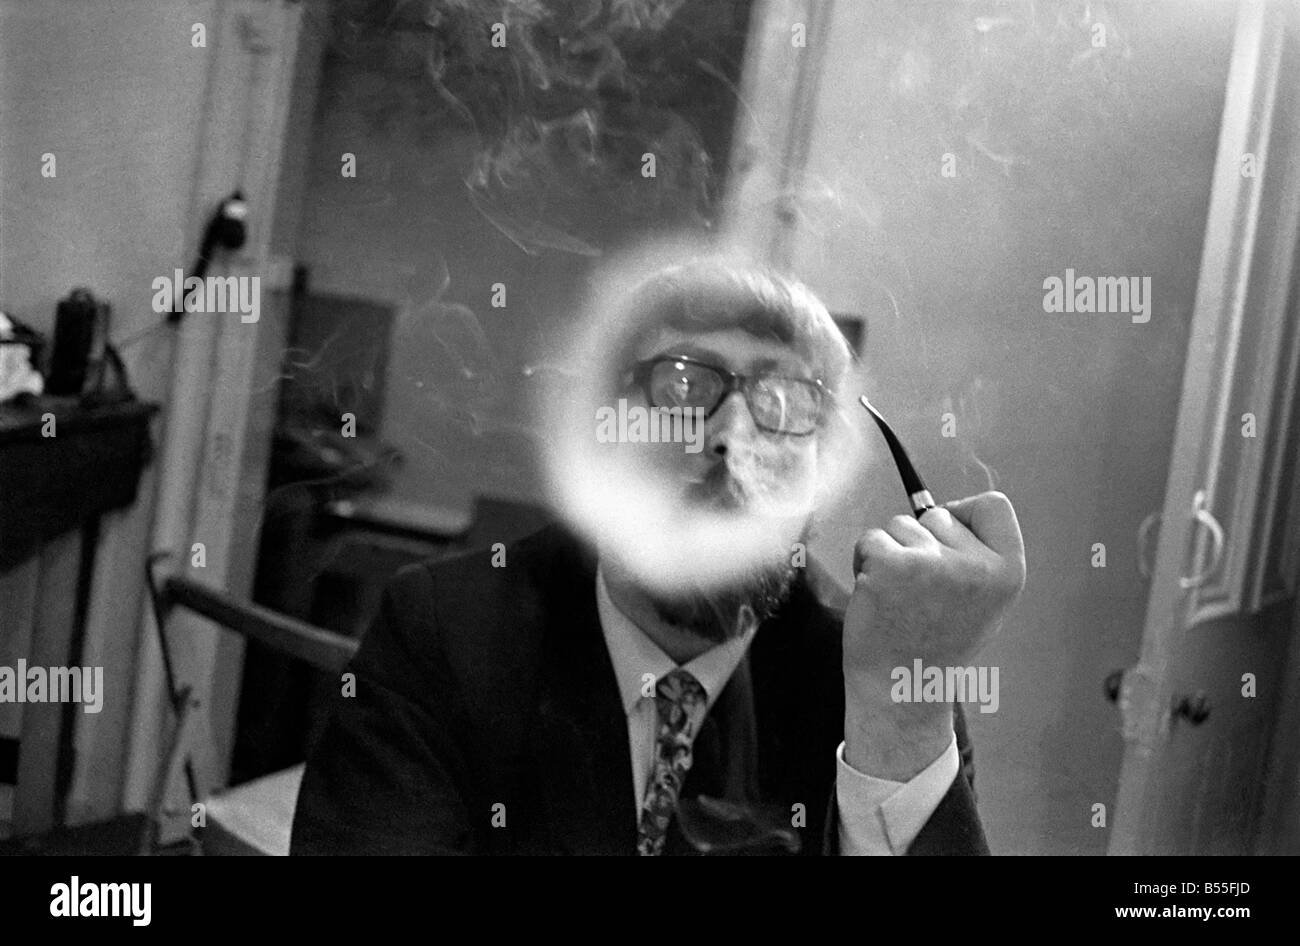 Un homme fume une cigarette soufflant des ronds de fumée. Novembre 1969 &# 13 ;&# 10;Z12004-006 Banque D'Images